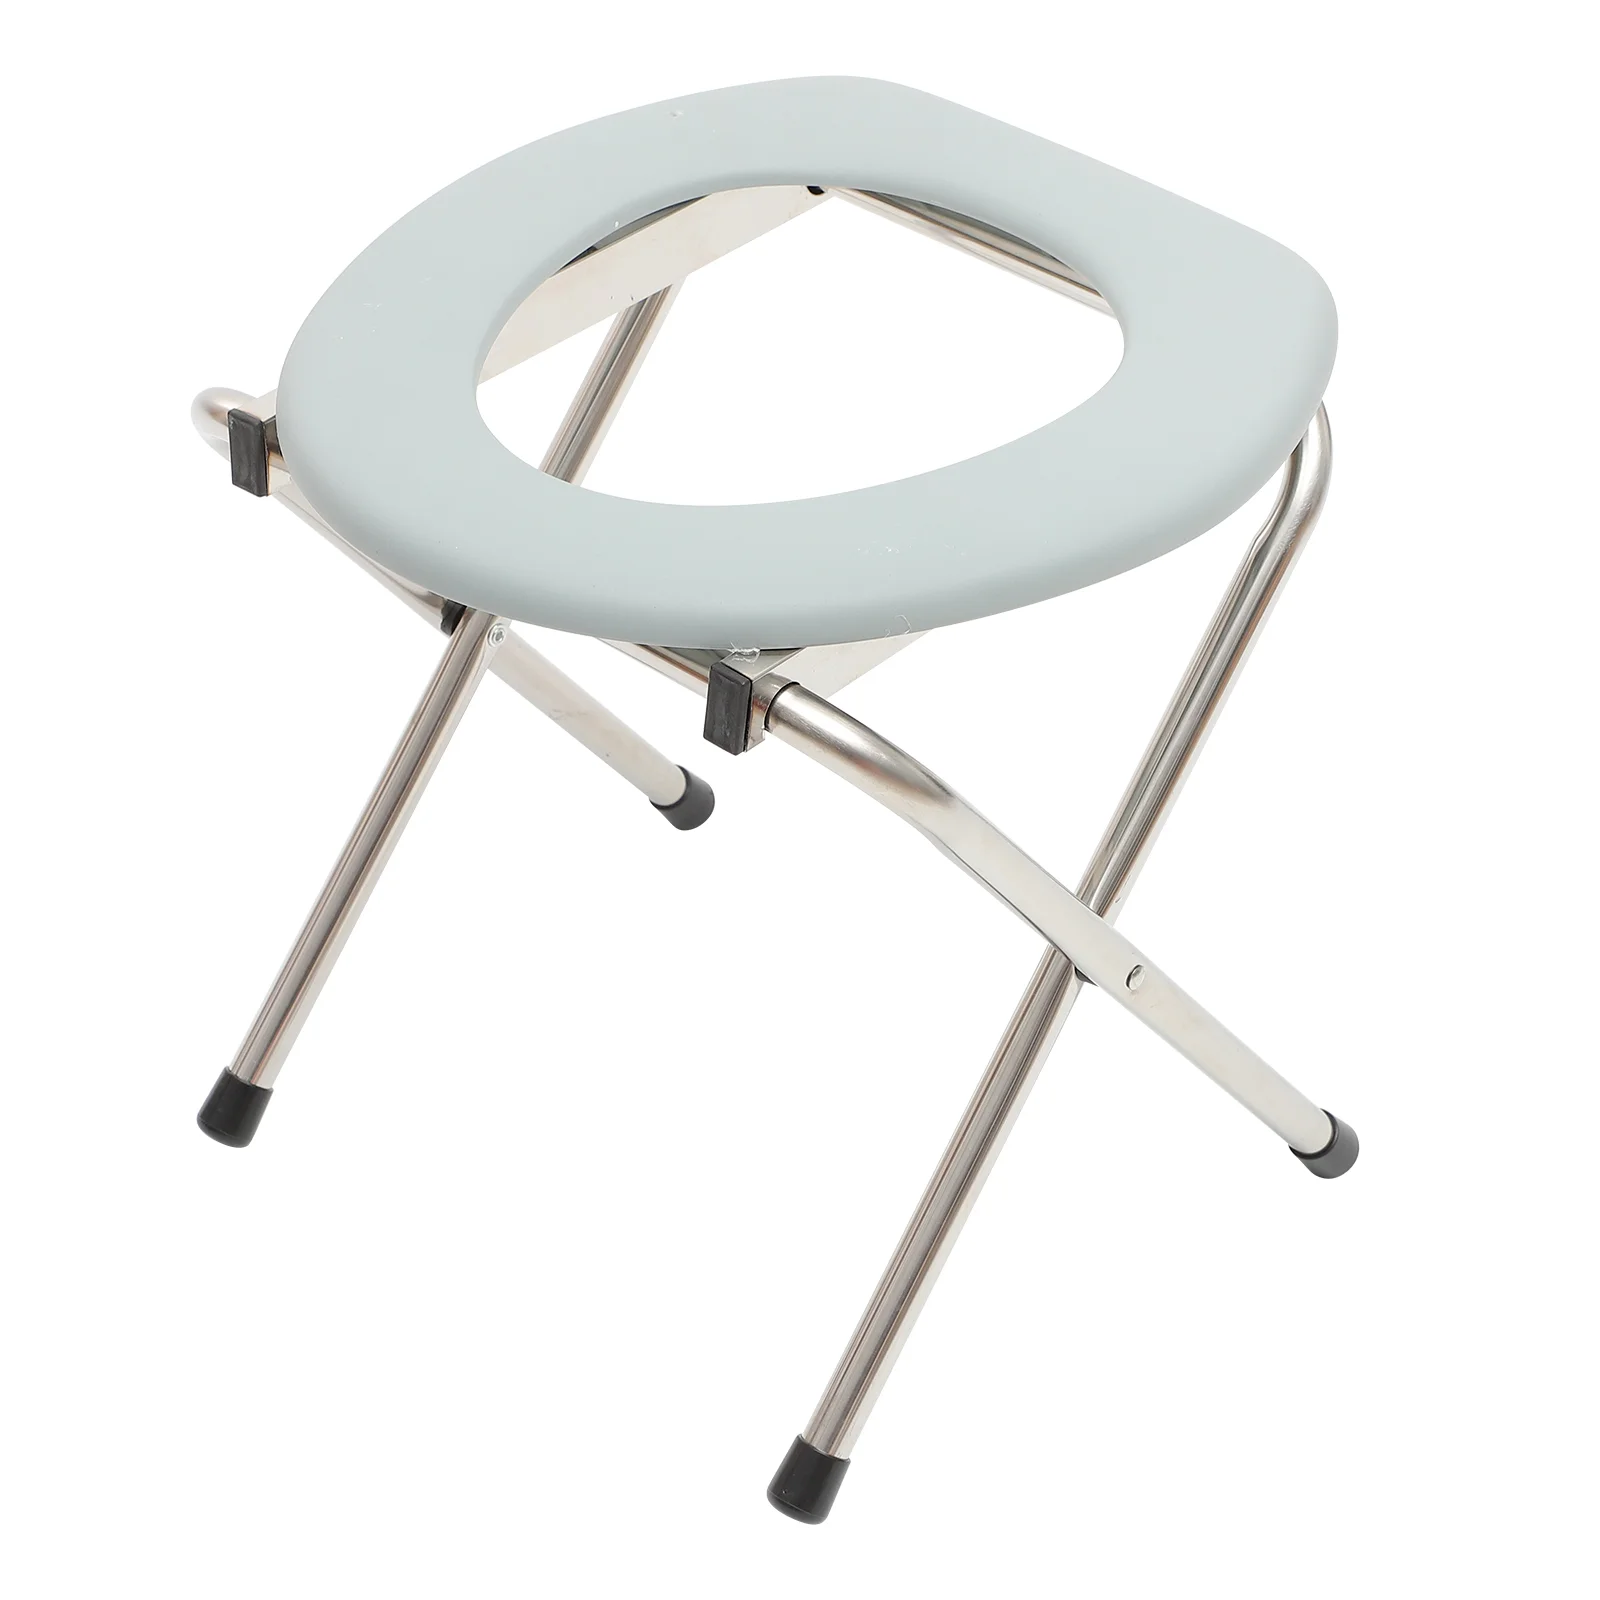 

Складные стулья для взрослых складной Туалет стабильный стул портативный комод складной Пластик для беременных женщин